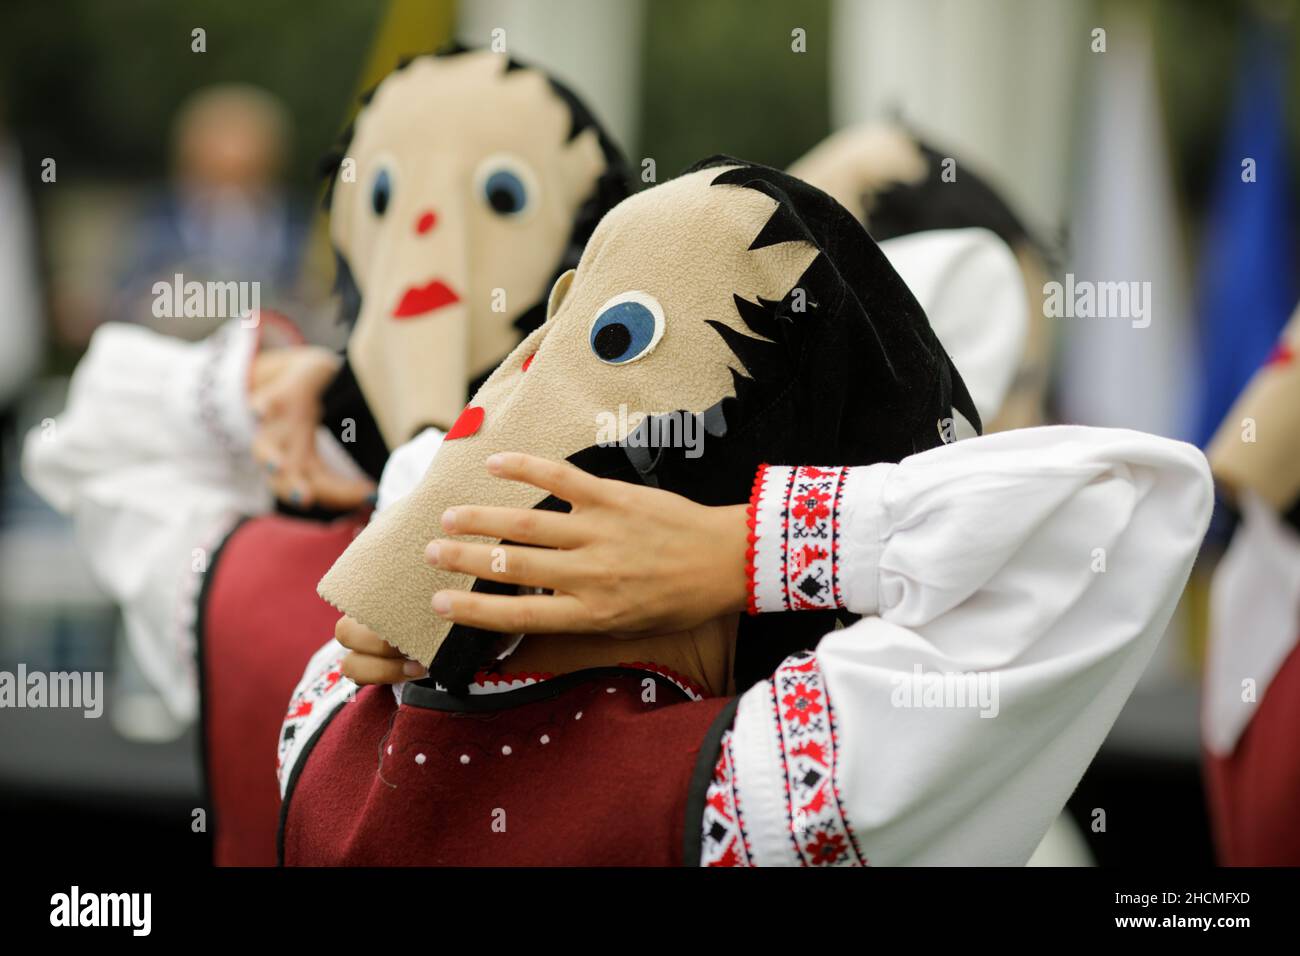 Braila, Rumänien - 26. August 2021: Frauen, die in traditionellen rumänischen Kostümen und mit rituellen Doppelgesichtsmasken gekleidet sind, führen einen traditionellen Tanz auf. Stockfoto